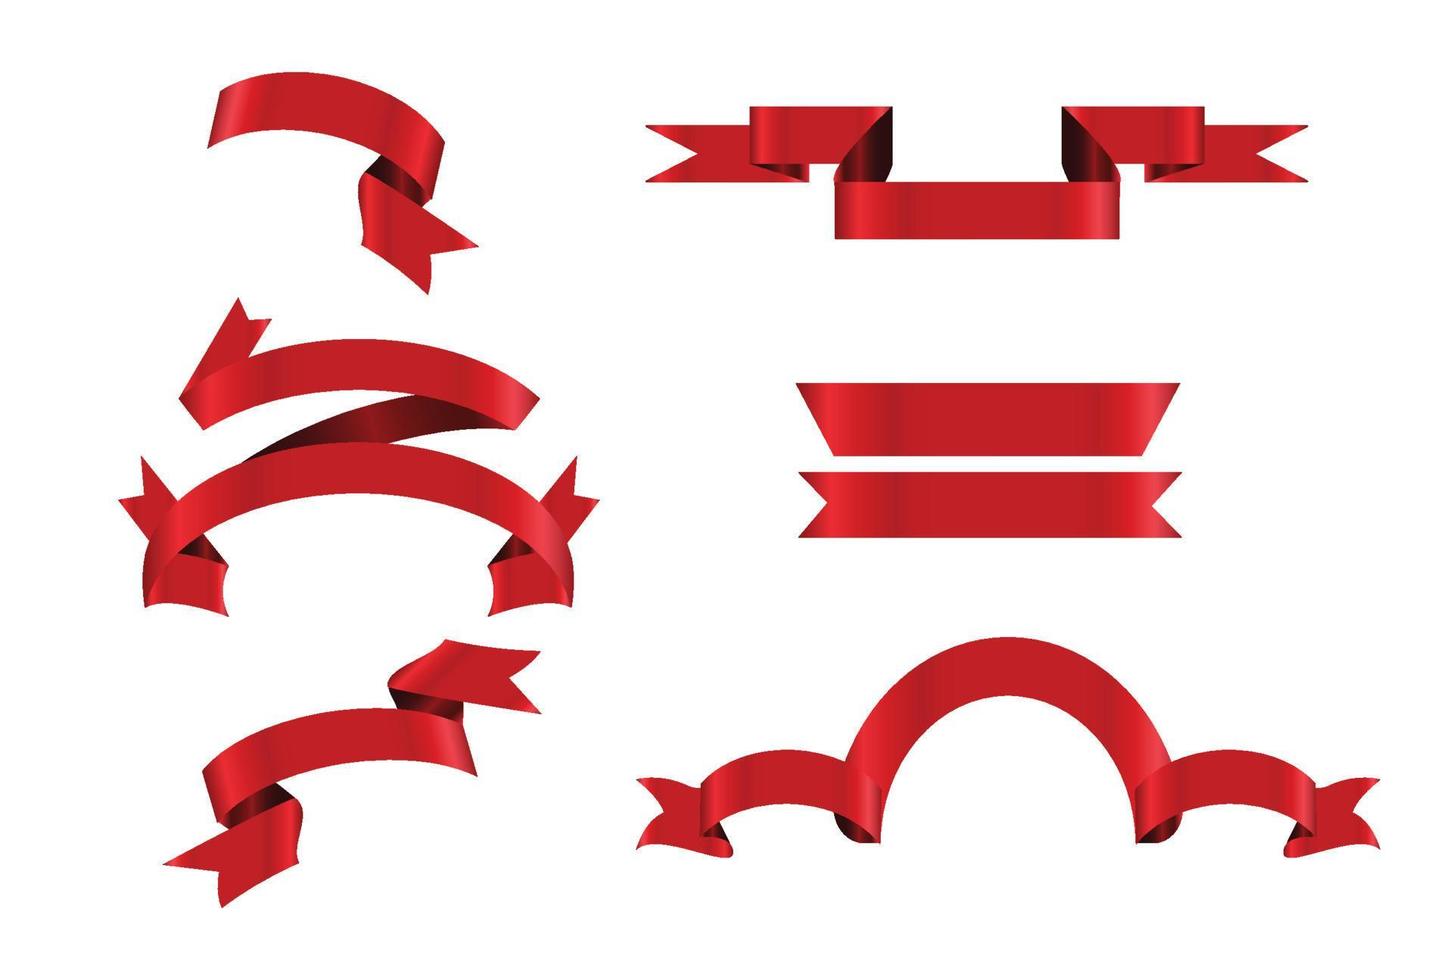 rött glänsande band vektor banners set. band samling. vektor design illustration